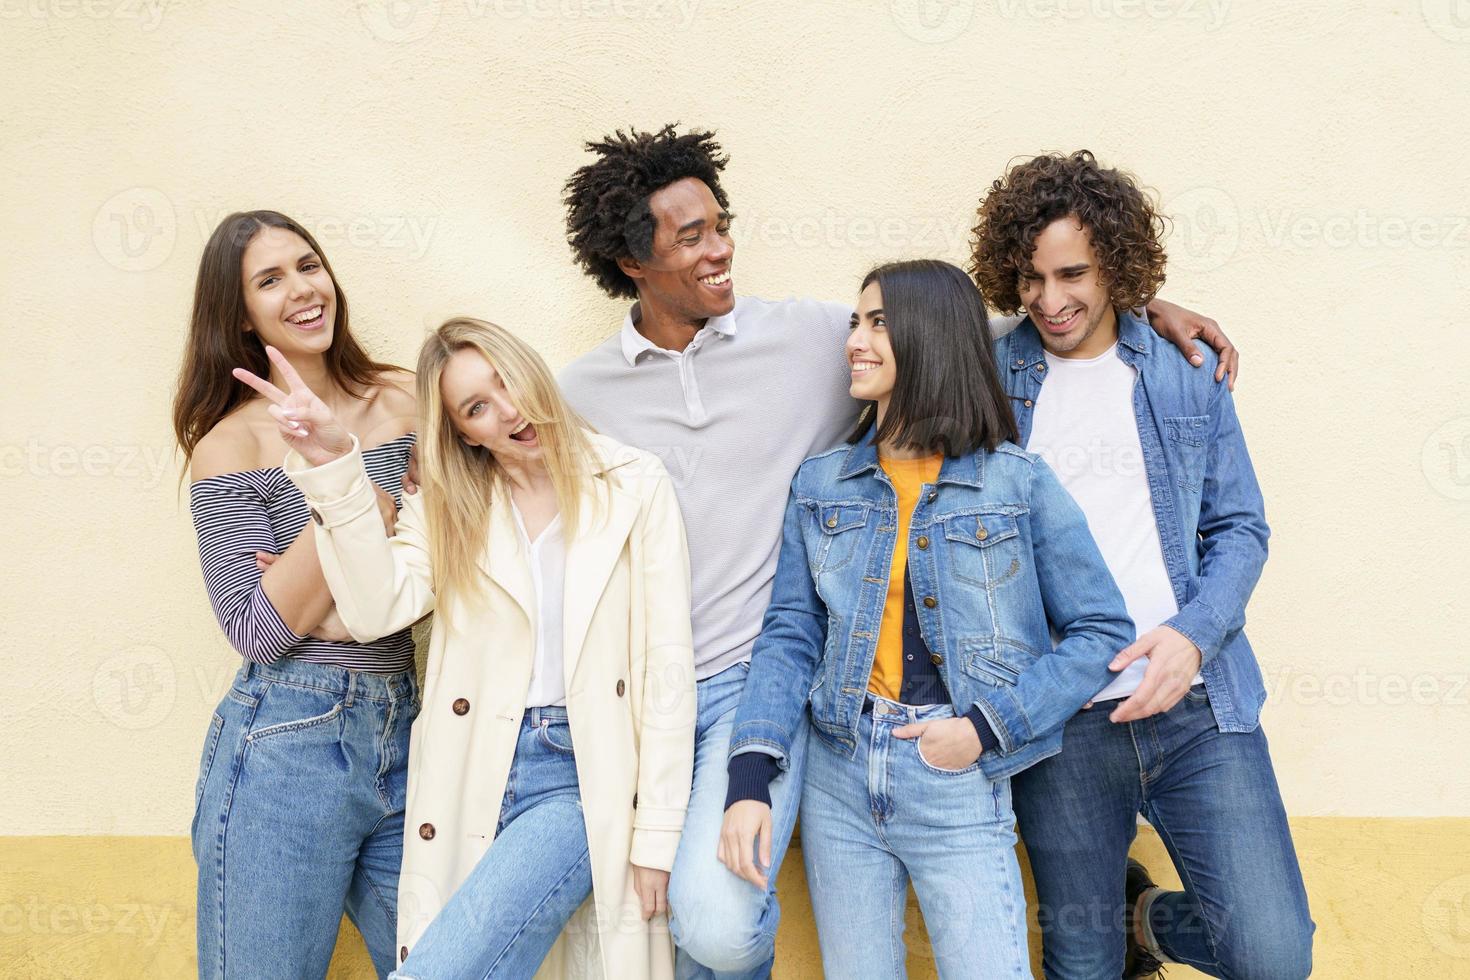 grupo multiétnico de amigos posando enquanto se divertem e riem juntos foto